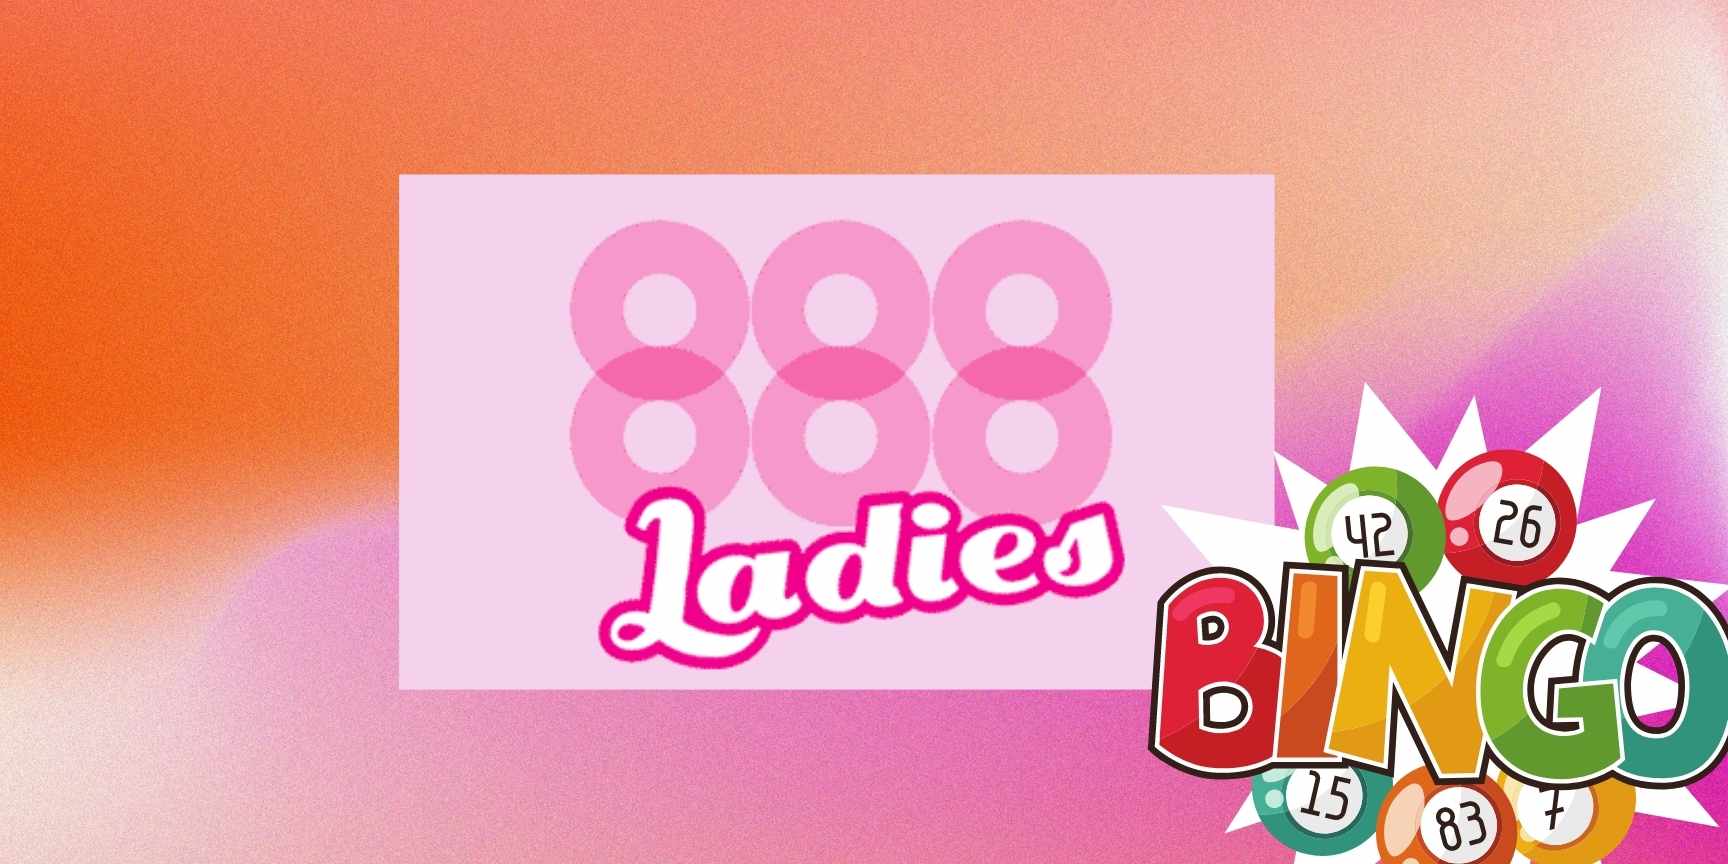 888 ladies